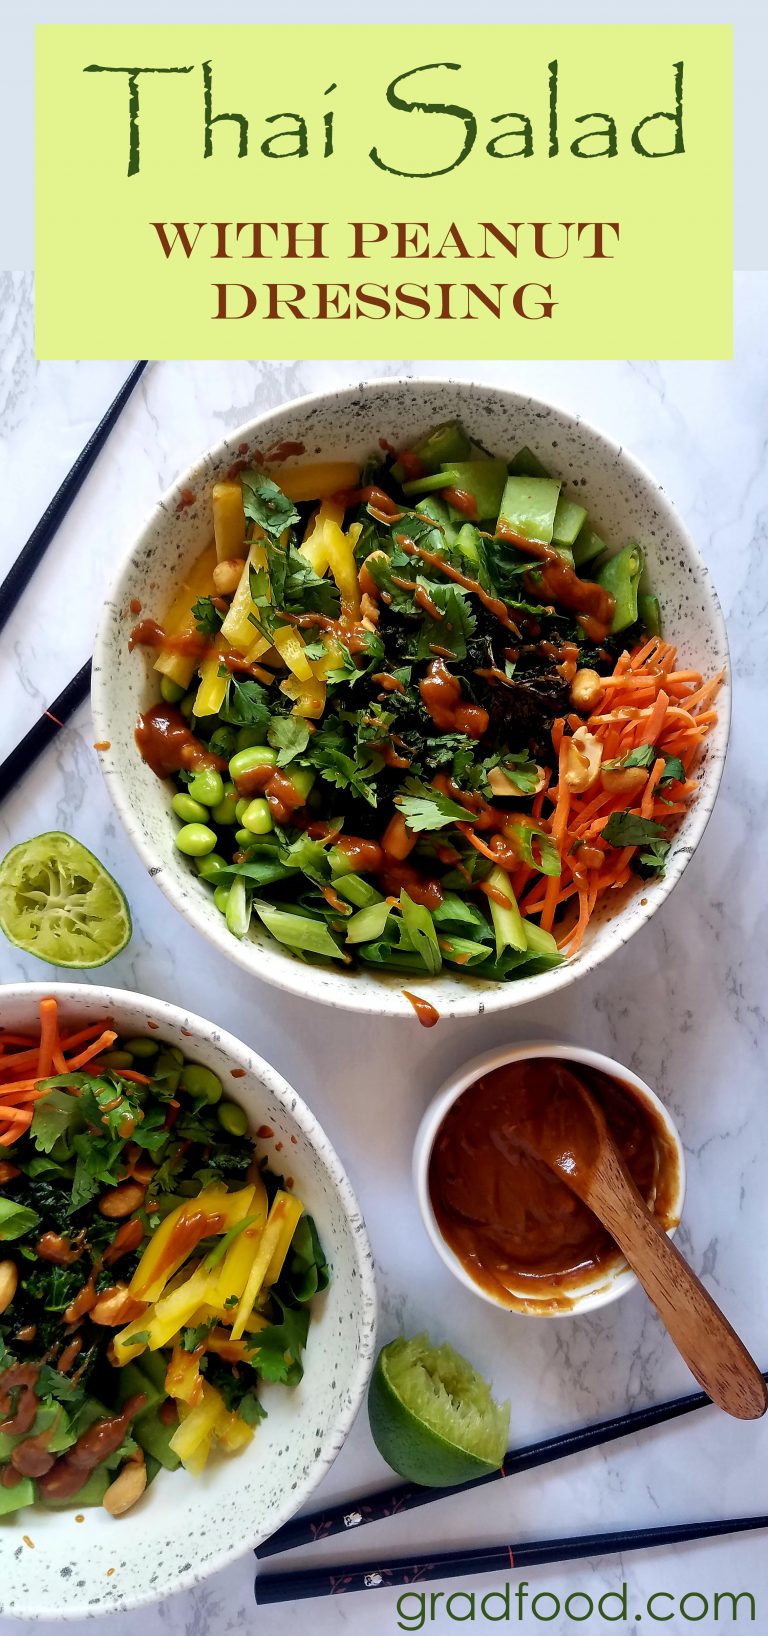 Roasted Thai Salad with Peanut Dressing | GradFood